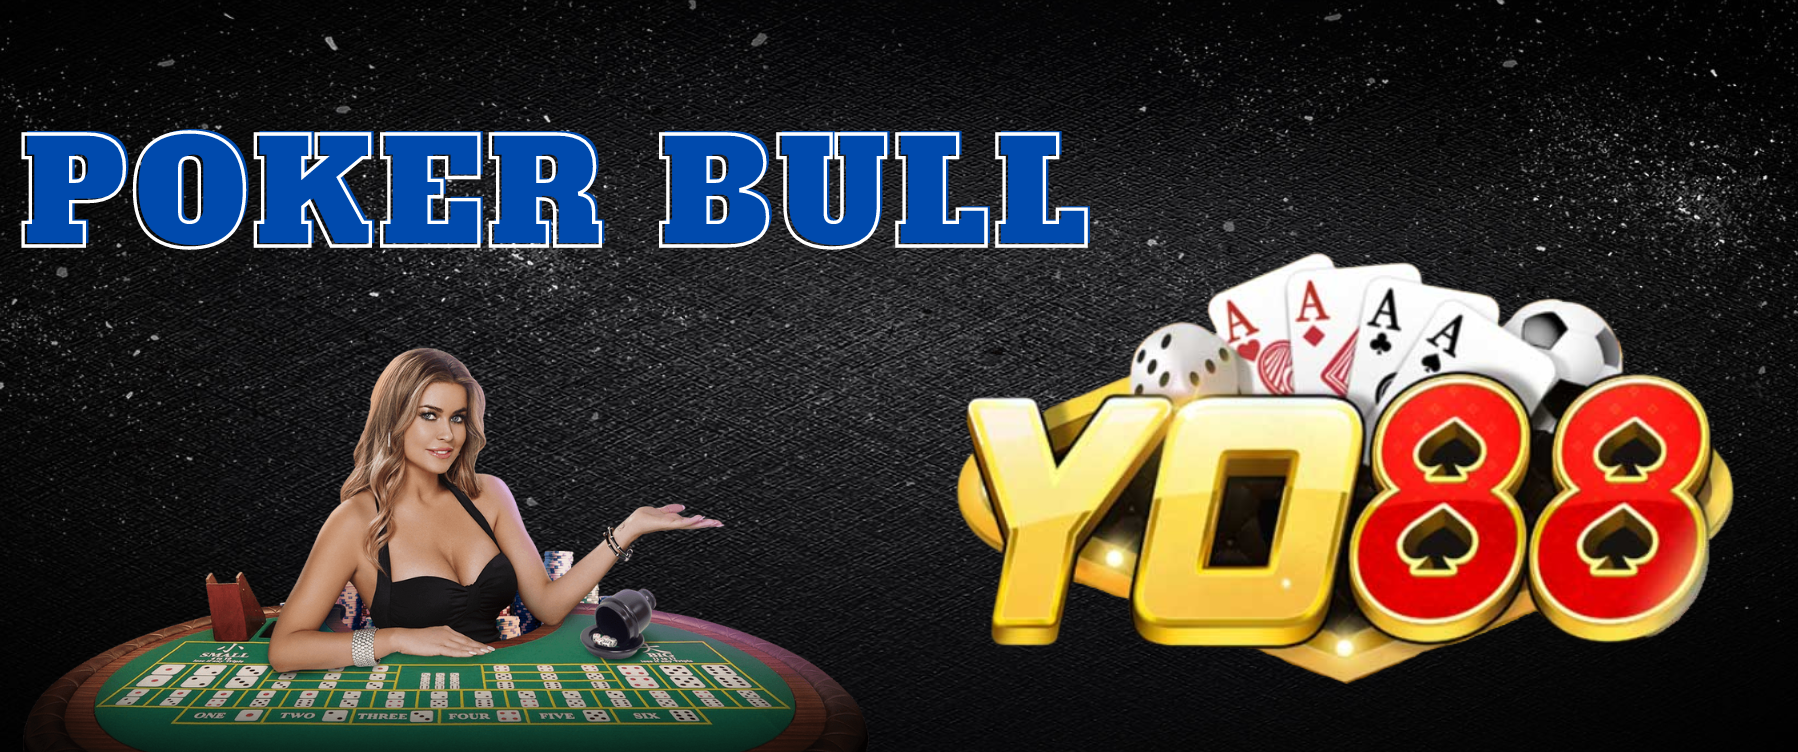 Game bài poker bull yo88